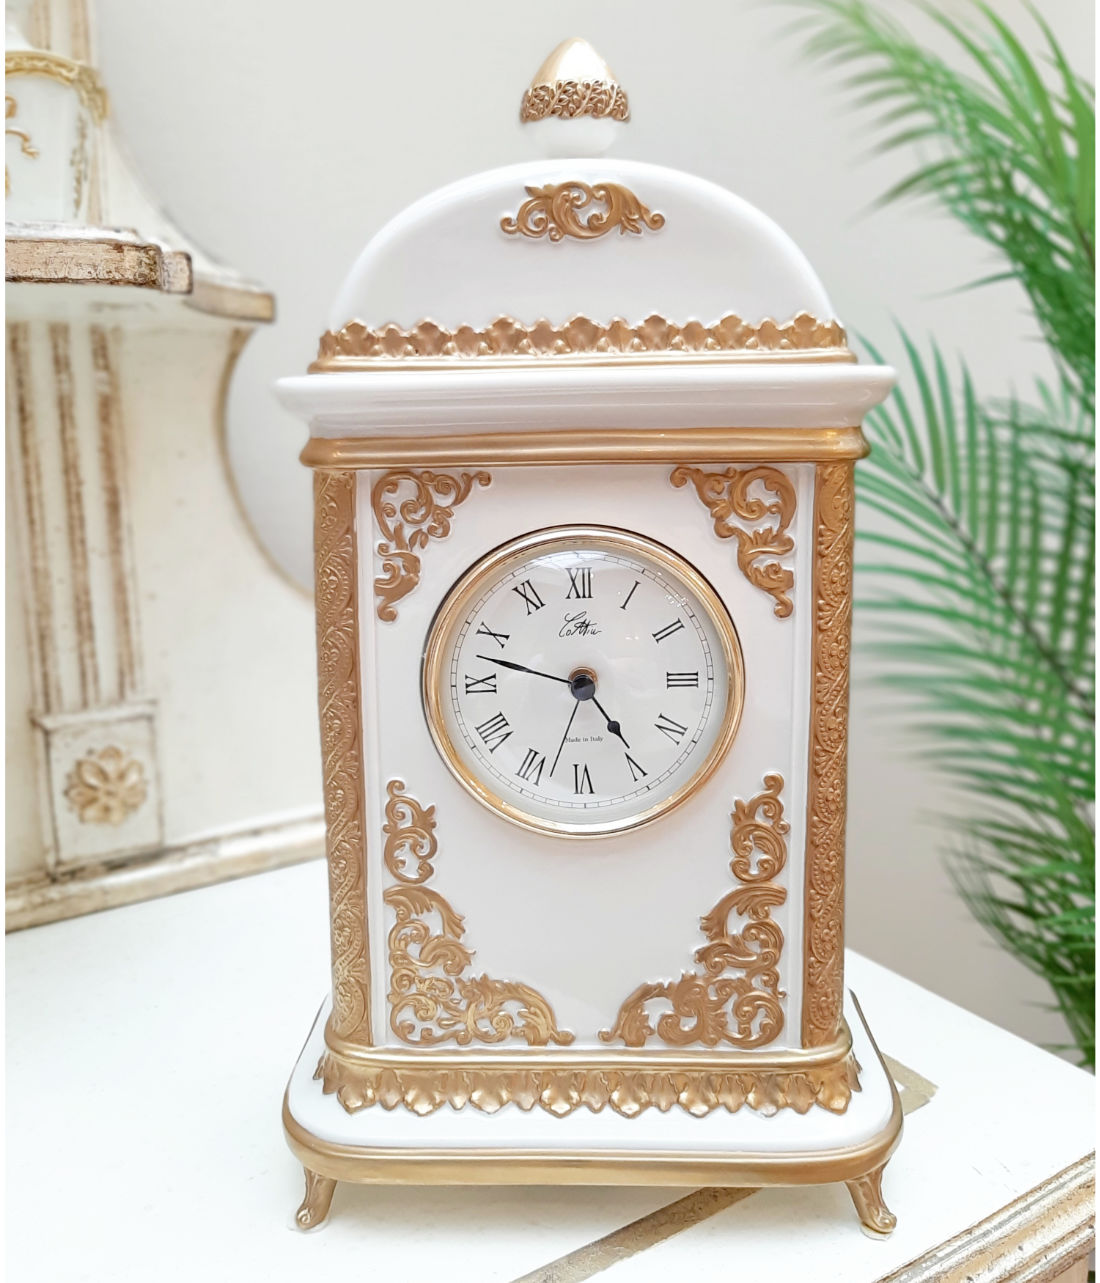 Cattin Porzellan Uhr, Zustand gebraucht wie neu, in creme gold, Frontalansicht.